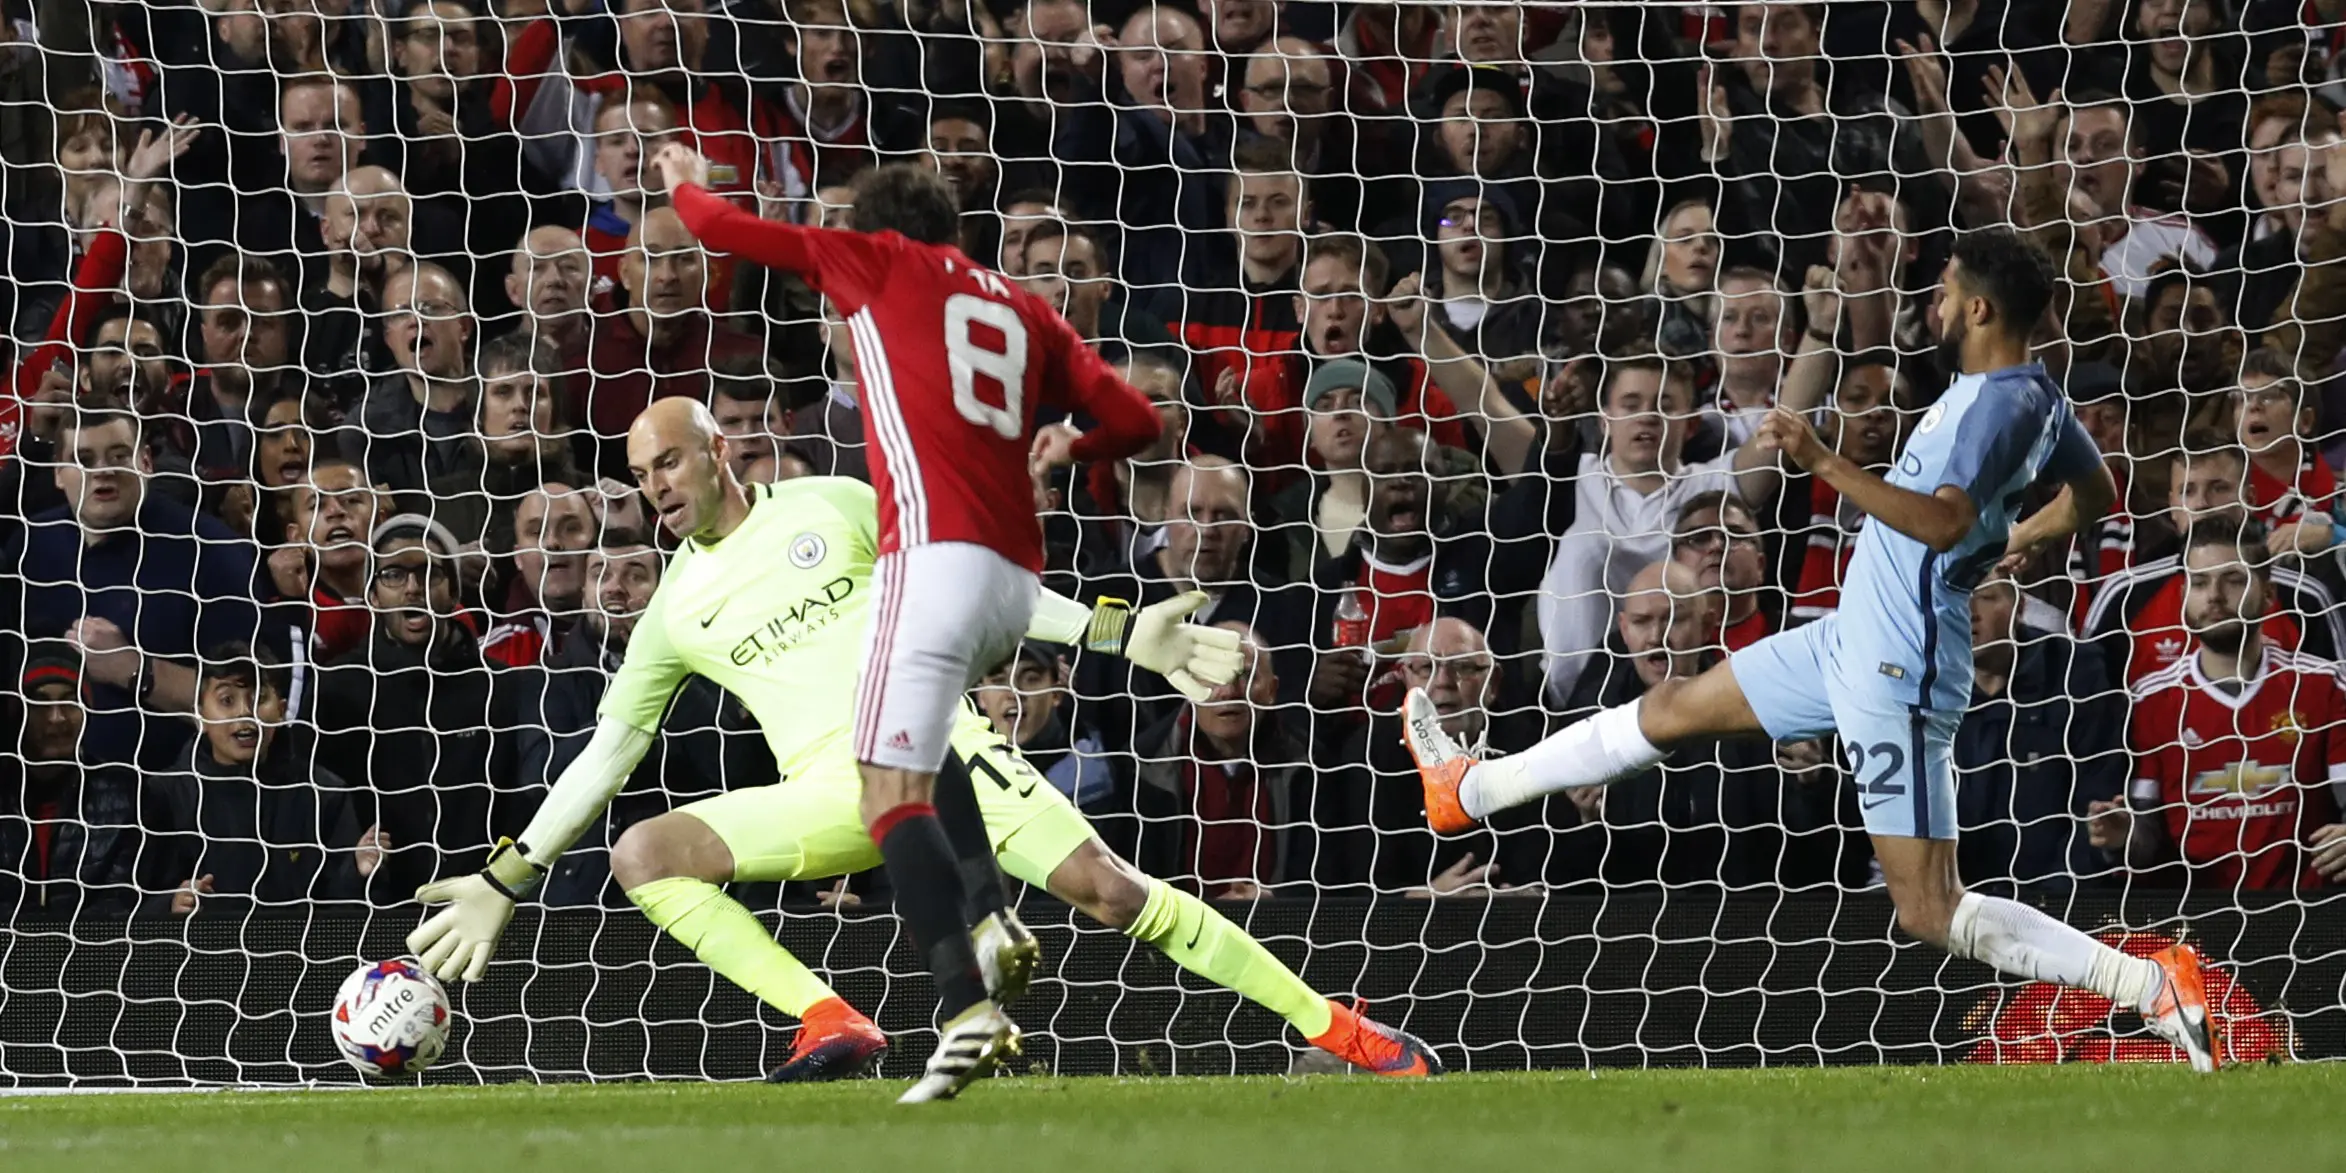 Gelandang Manchester United, Juan Mata, mencetak gol kemenangan atas Manchester City di Piala Liga Inggris. (Reuters/Darren Staples)